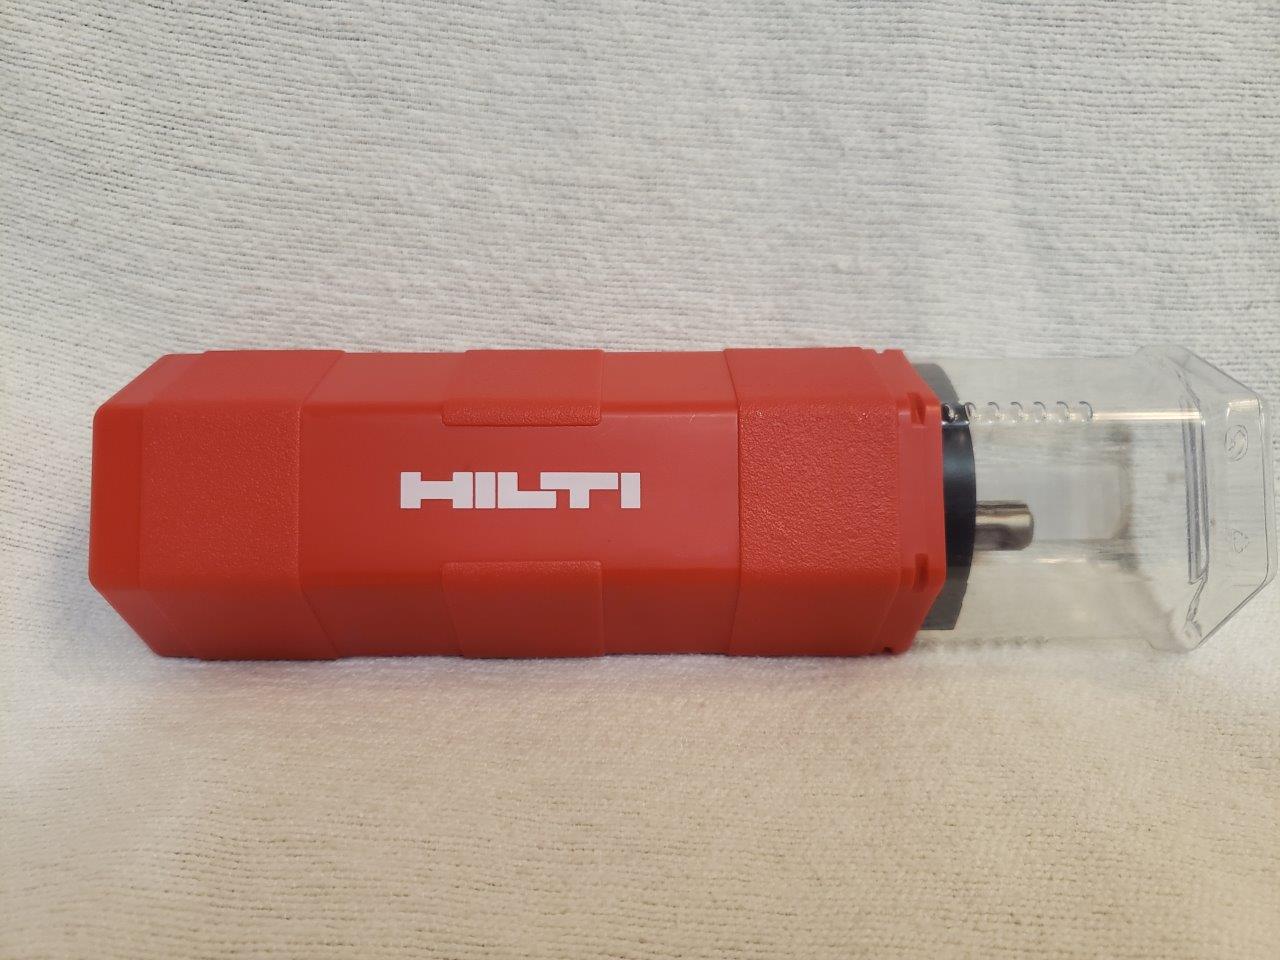 Brand New Hilti Set tool & Drill Bit Combo 2112763 HDI-P 3/8